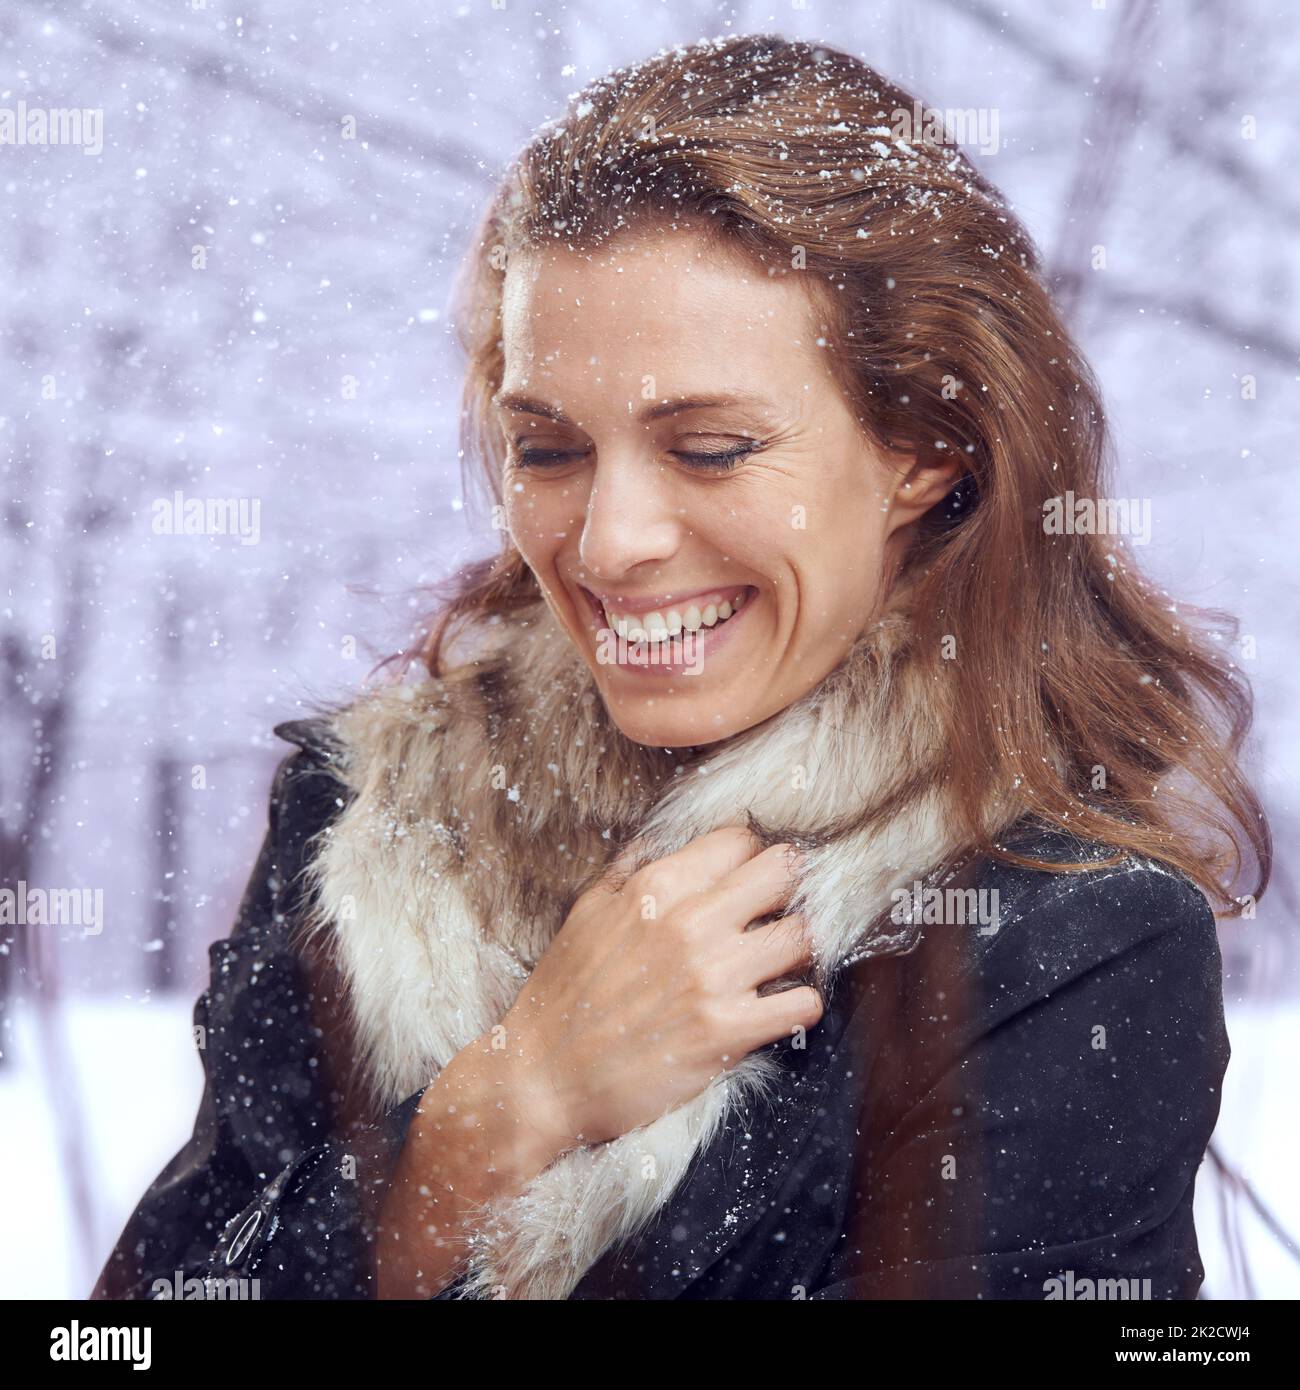 Ein Moment der Wärme. Aufnahme einer attraktiven Frau, die im Schnee lächelt. Stockfoto